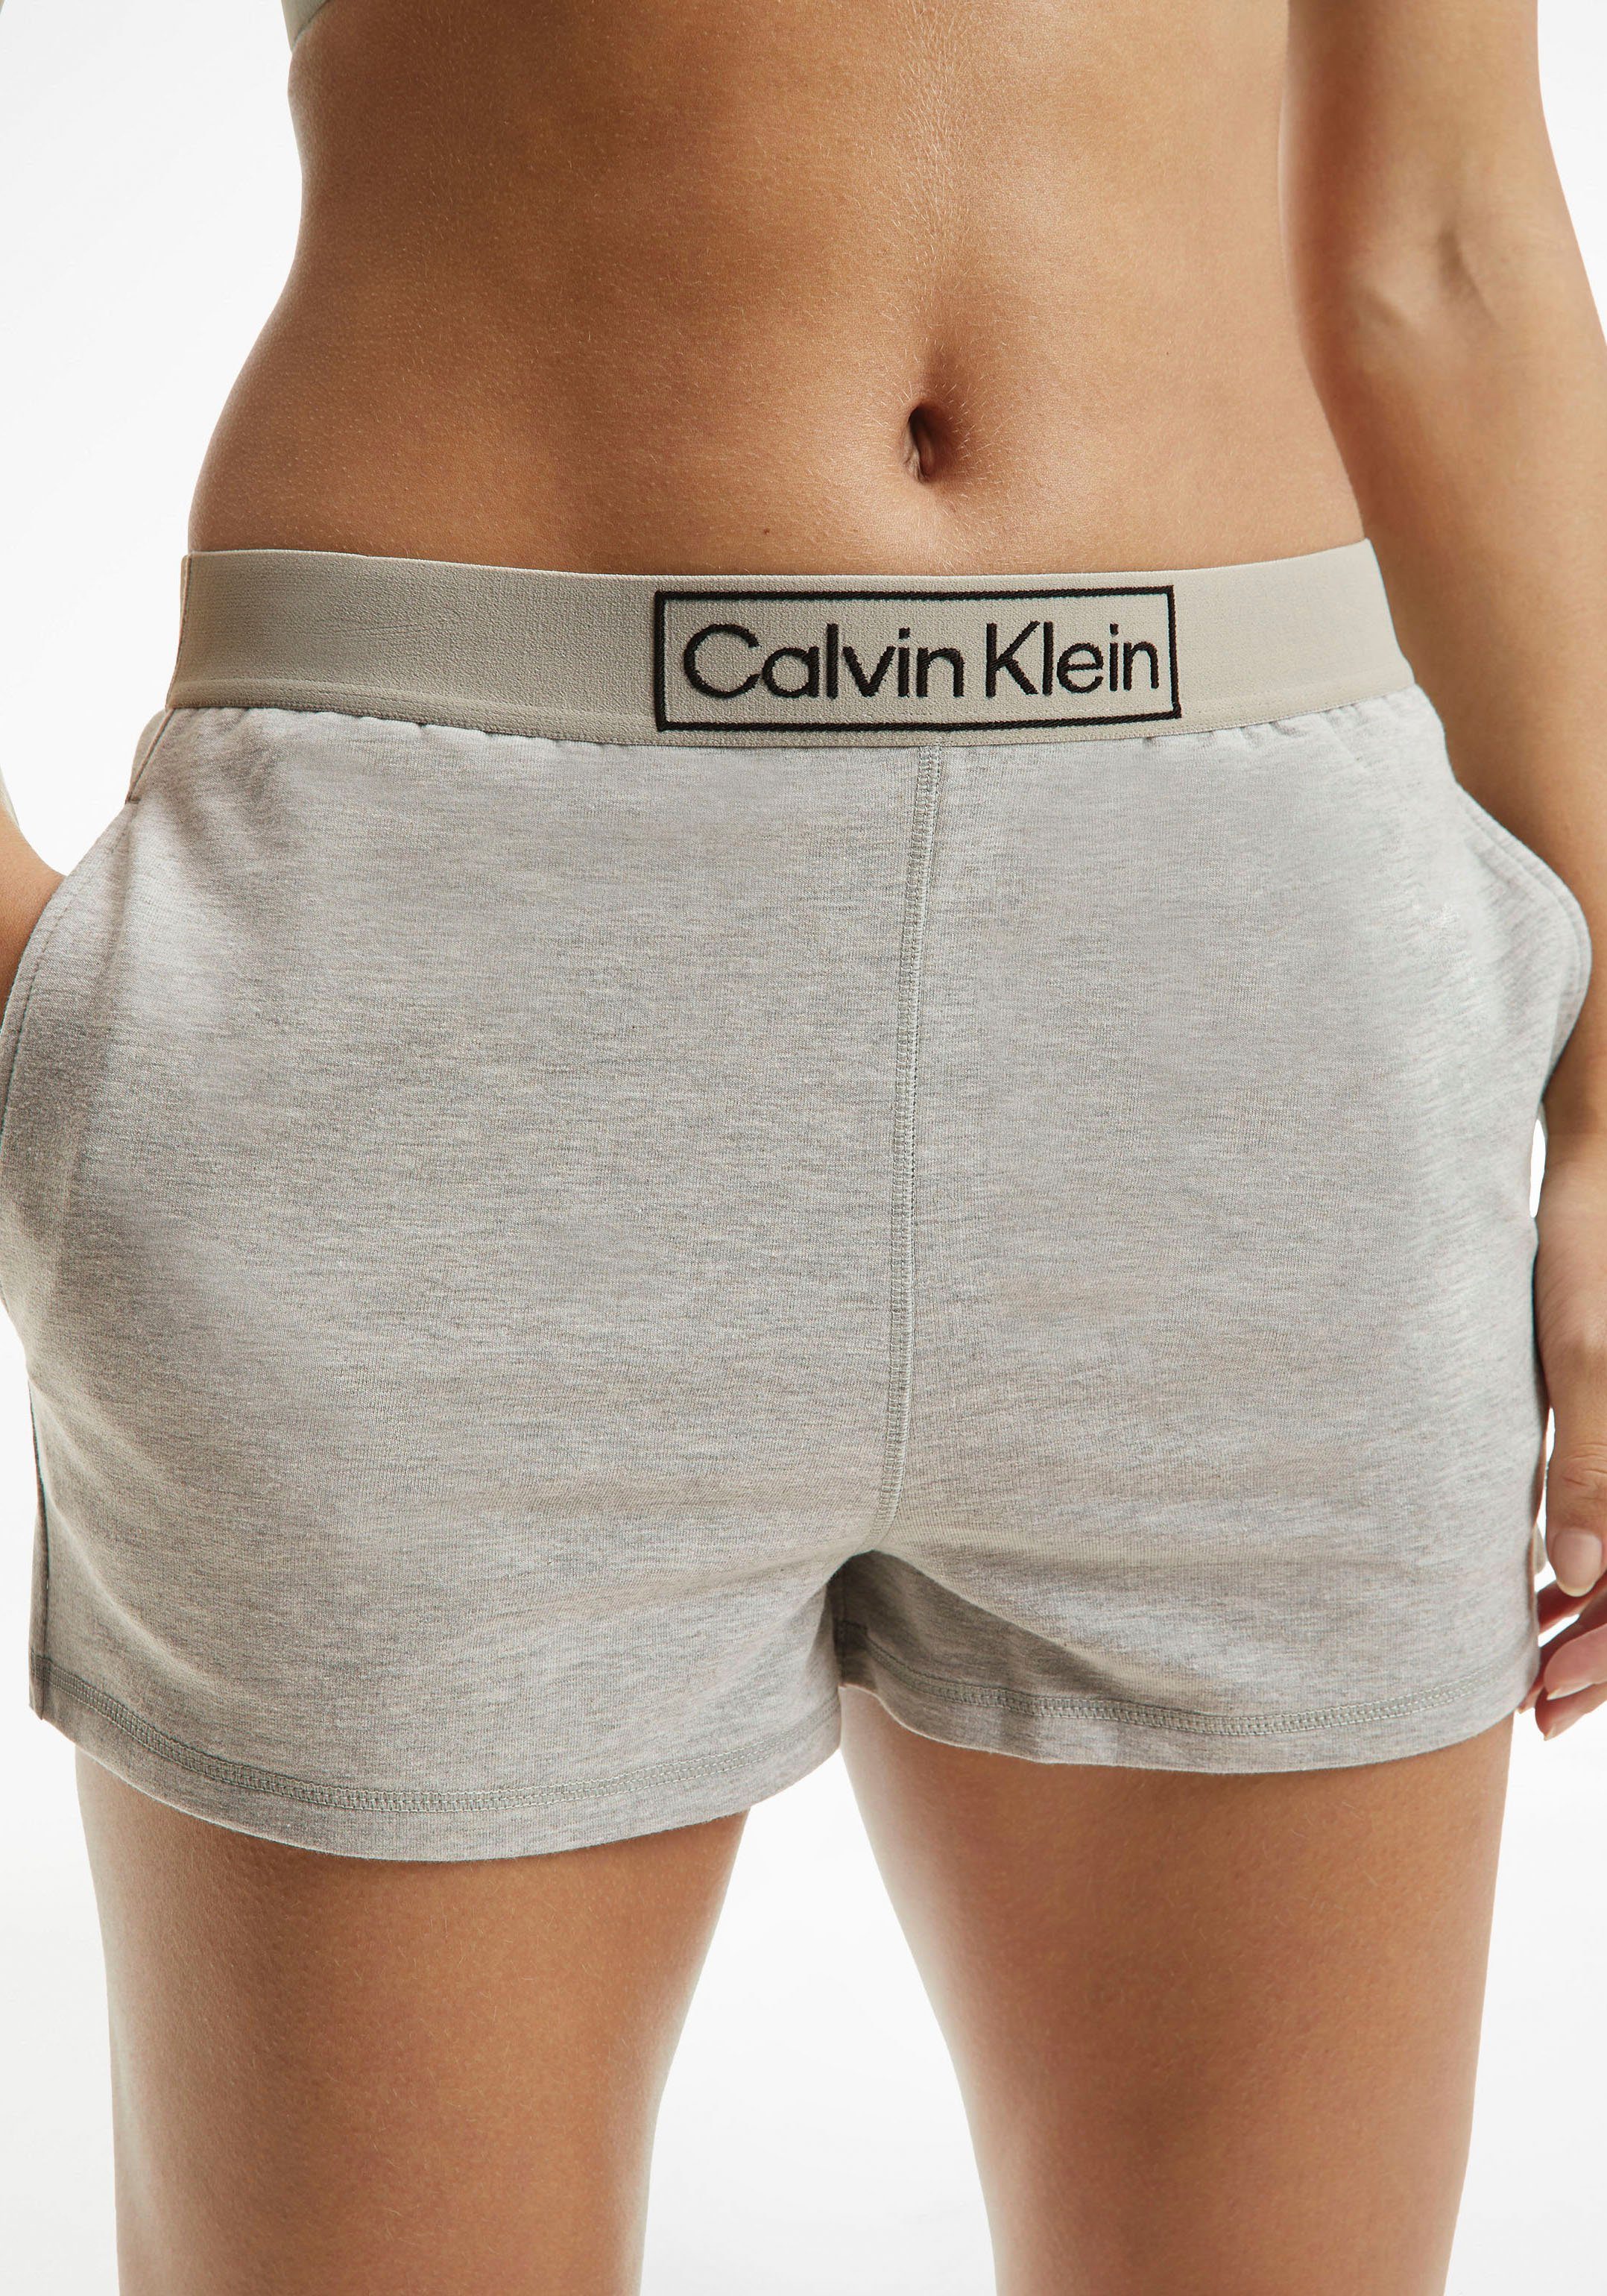 Underwear Calvin bequemen Gummizug Klein Schlafshorts mit